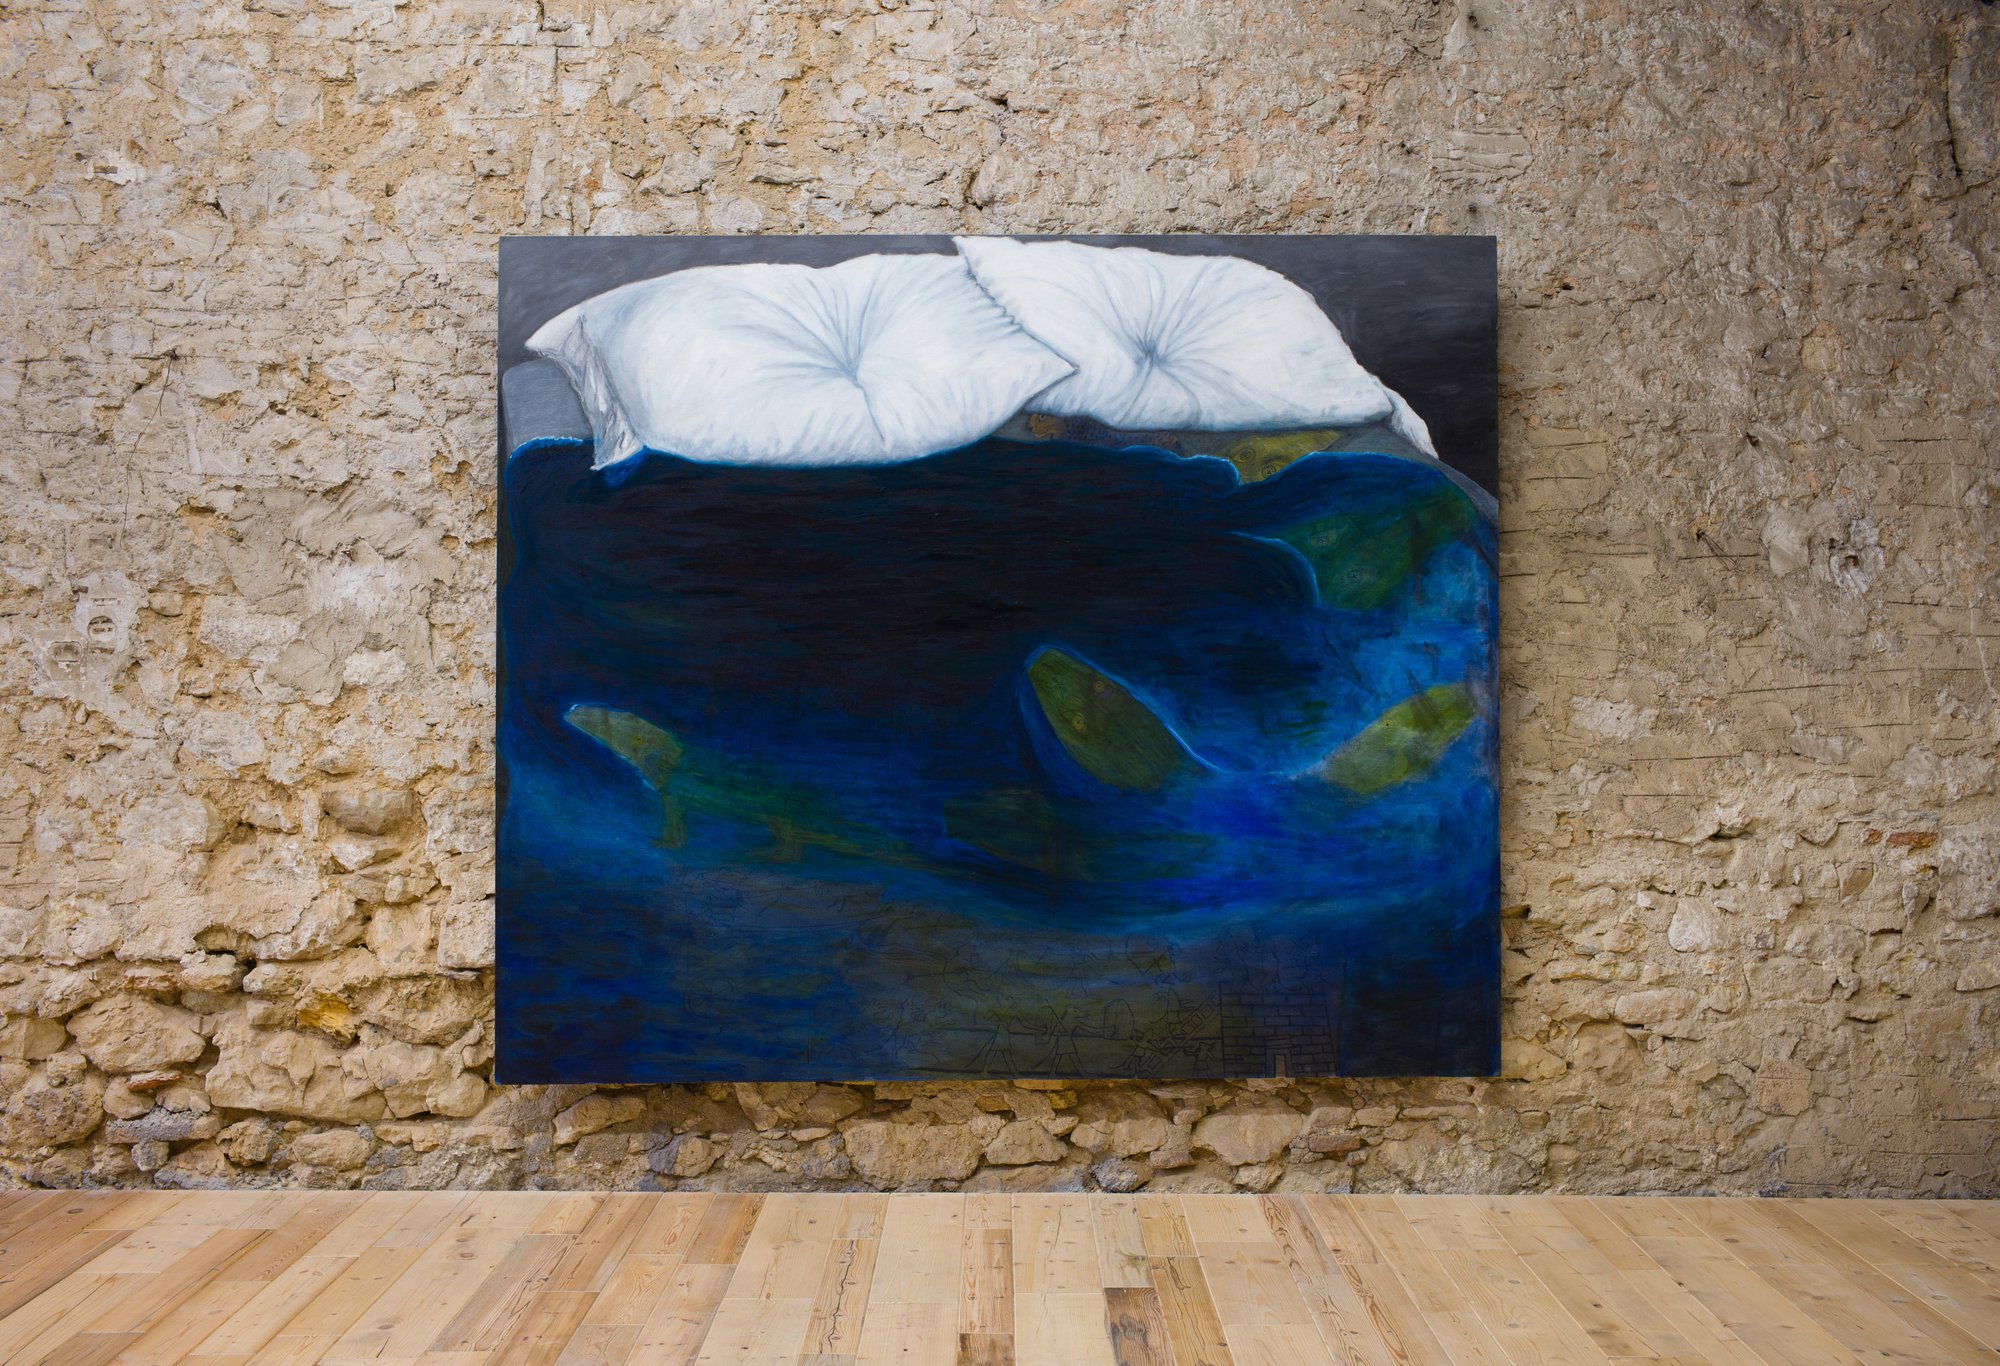 Leidy Churchman, Untitled, oil on linen, 259 x 218.5 cm, 2018